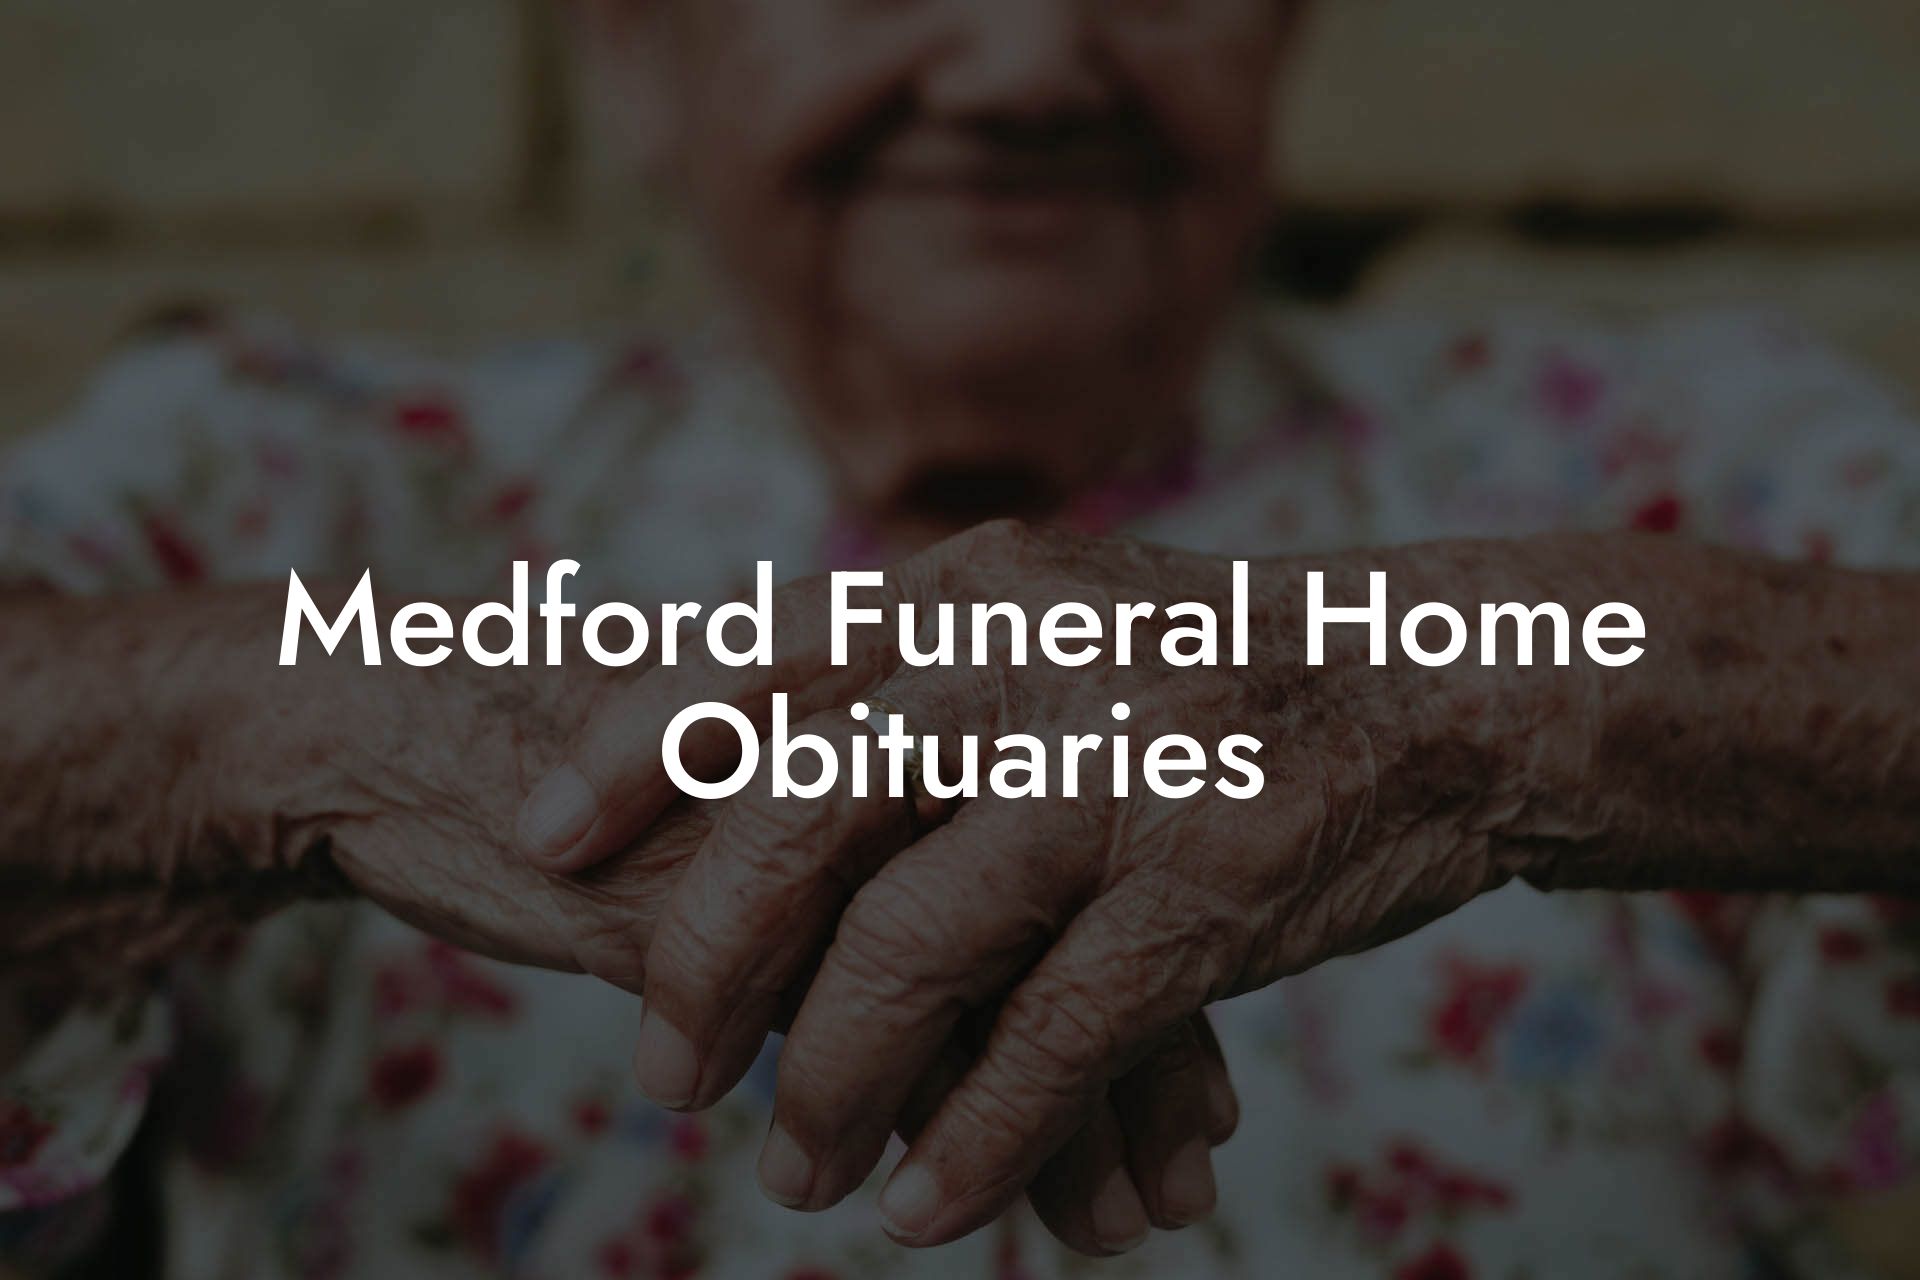 Medford Funeral Home Obituaries